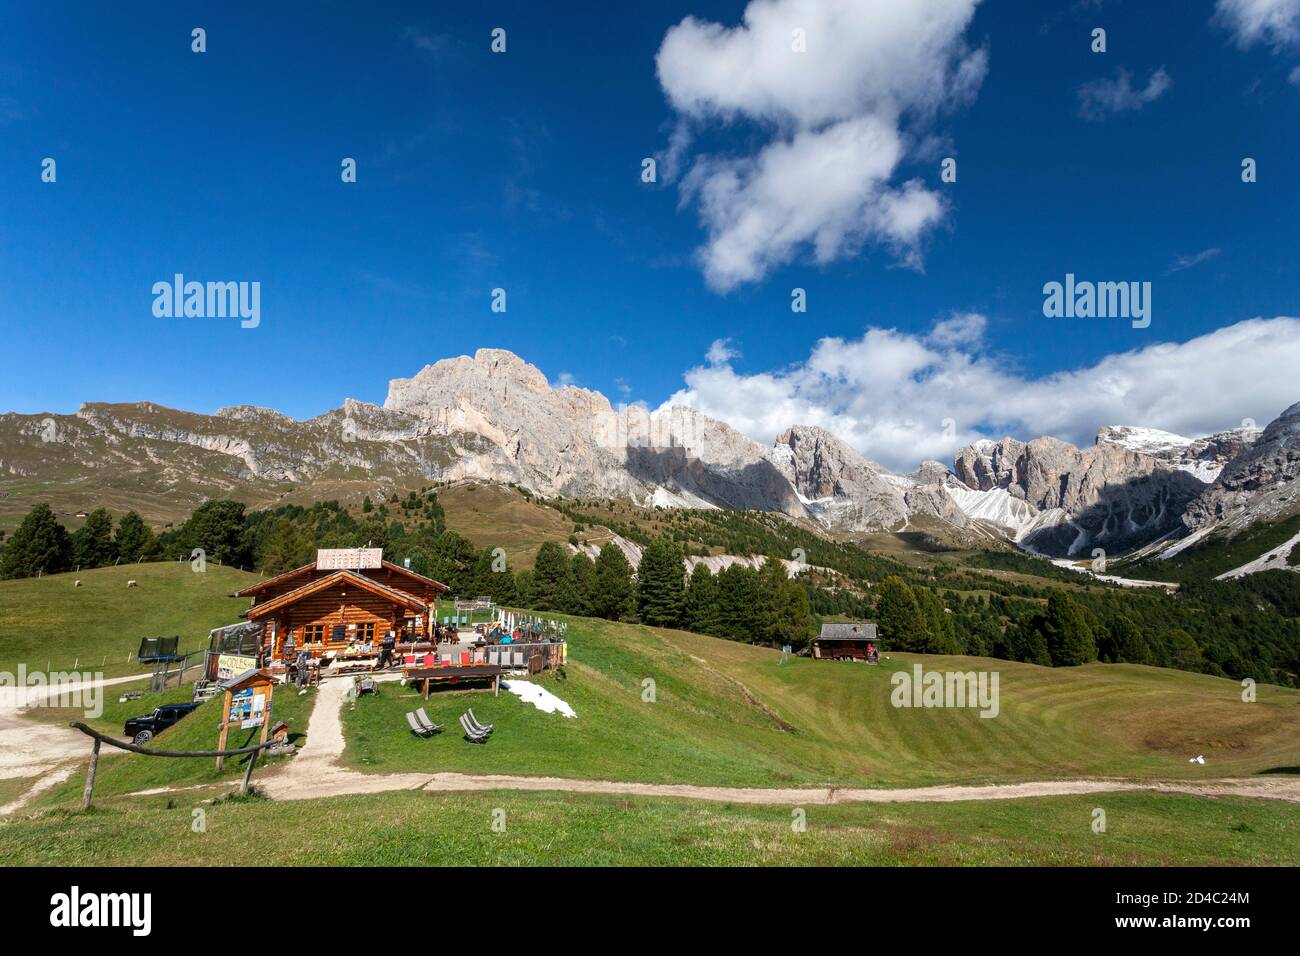 Die Baita Odles Rifugio/ Hütte Ist offen für Geschäfte unter blauem Himmel mit einem atemberaubenden Hintergrund der Geisler Gruppe von Dolomitengipfeln Stockfoto